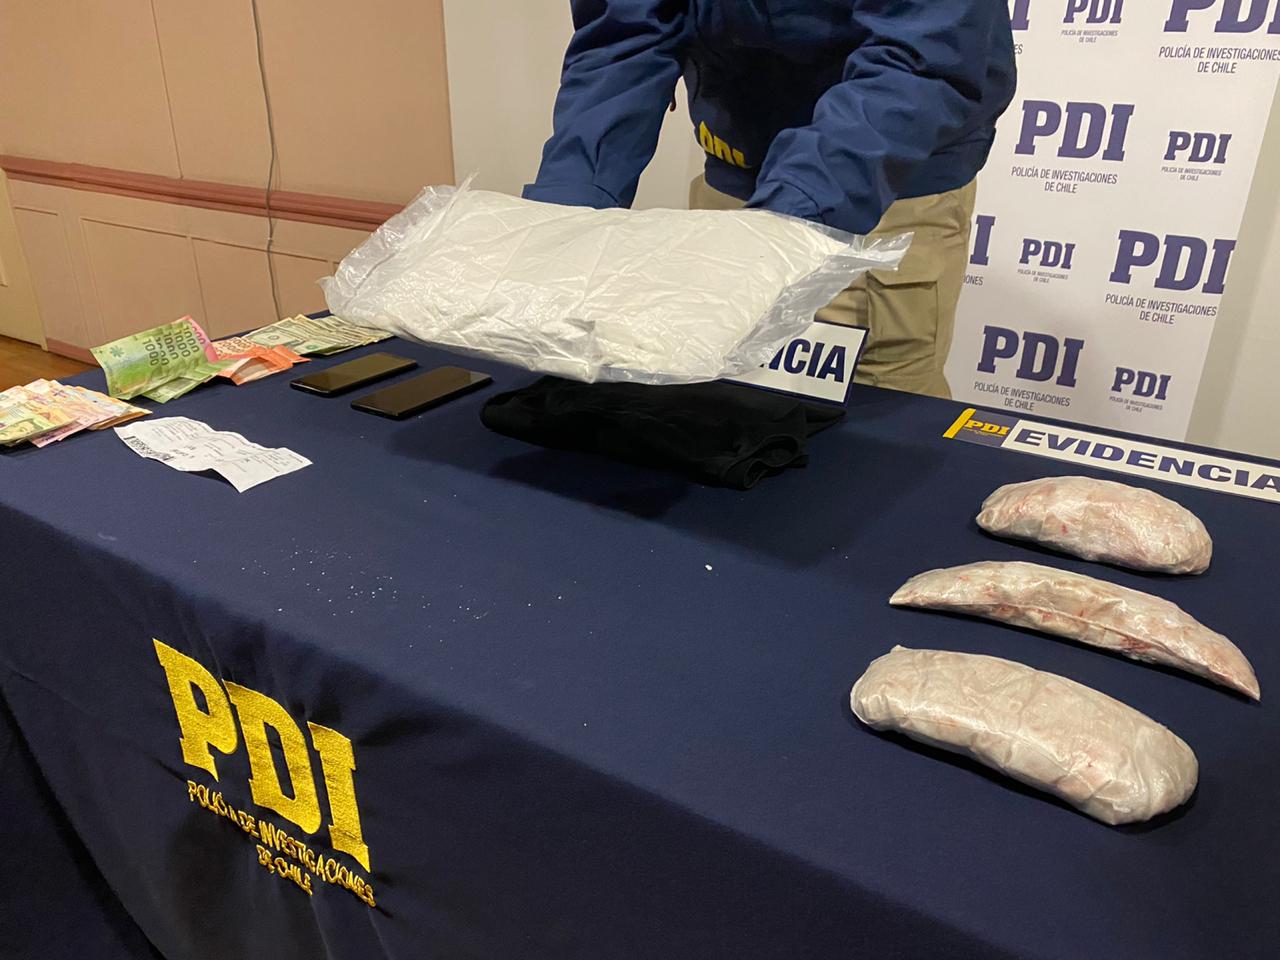 Detenida en el aeropuerto de Punta Arenas al intentar ingresar más de dos kilos de clorhidrato de cocaína: es la incautación más grande en lo que va corrido del 2020